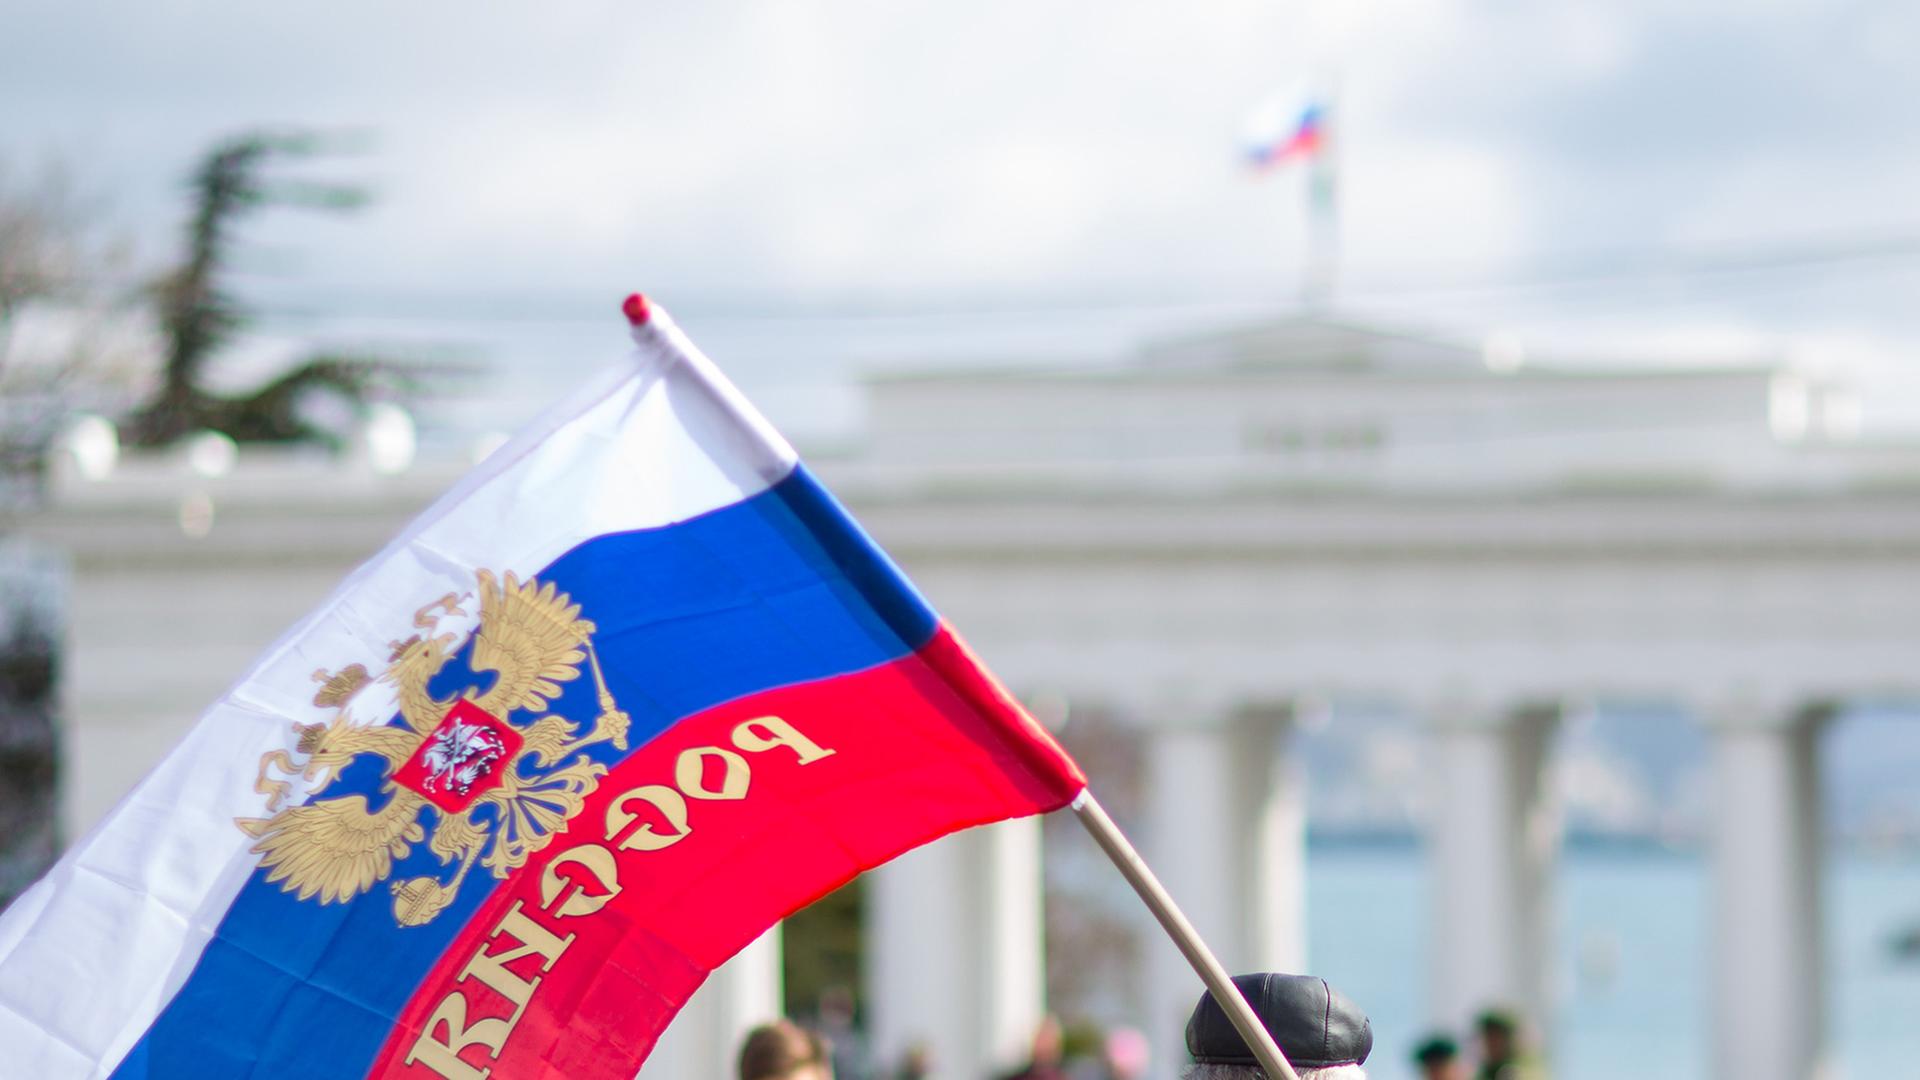 Ein Mann mit einer Russland-Flagge geht auf ein staatliches Gebäude mit Säulen zu